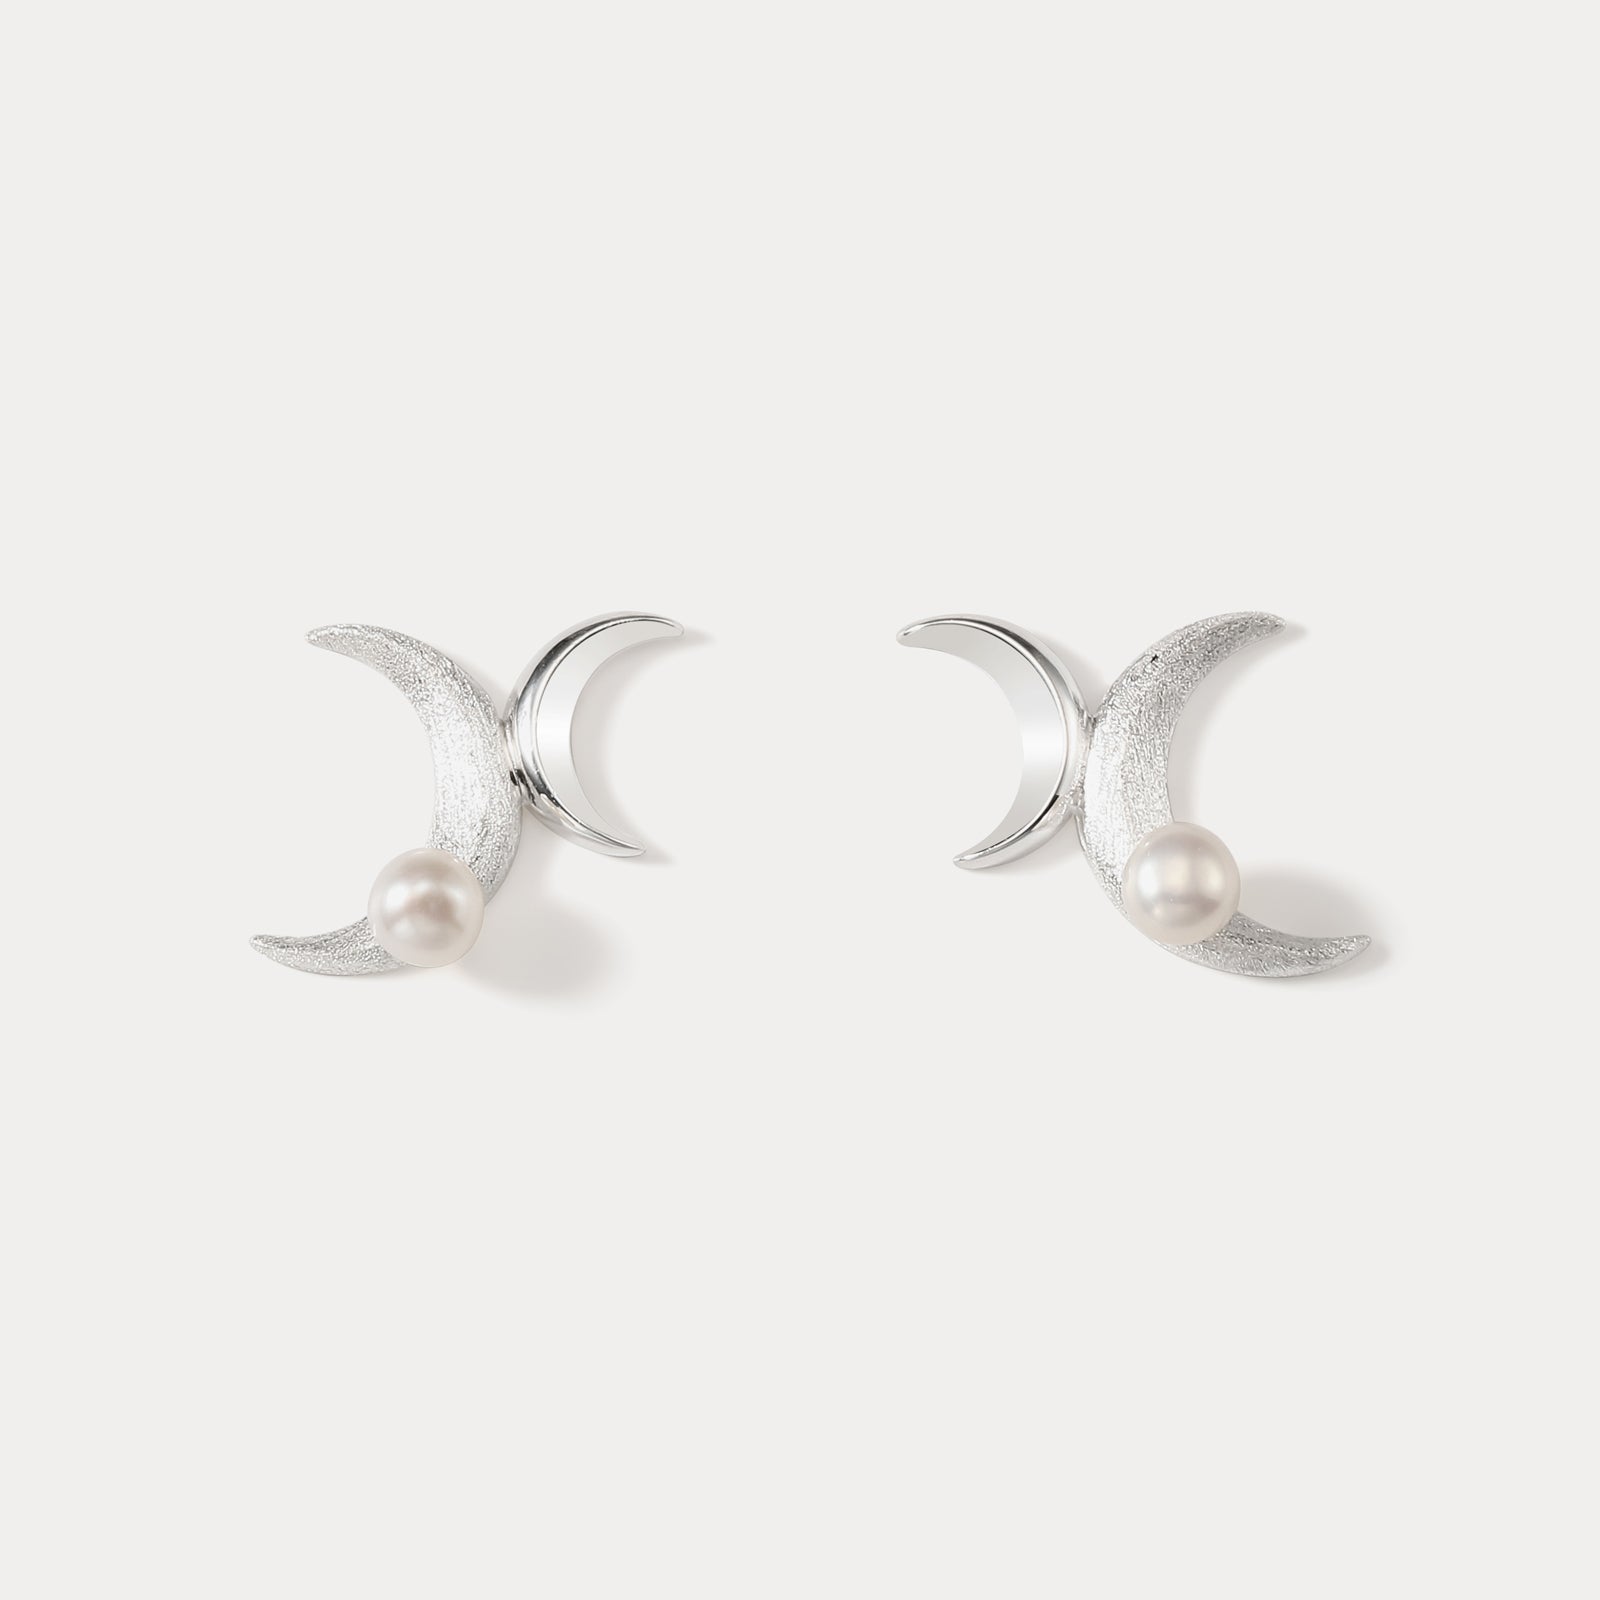 Selenichast Silver Double Moon Earrings